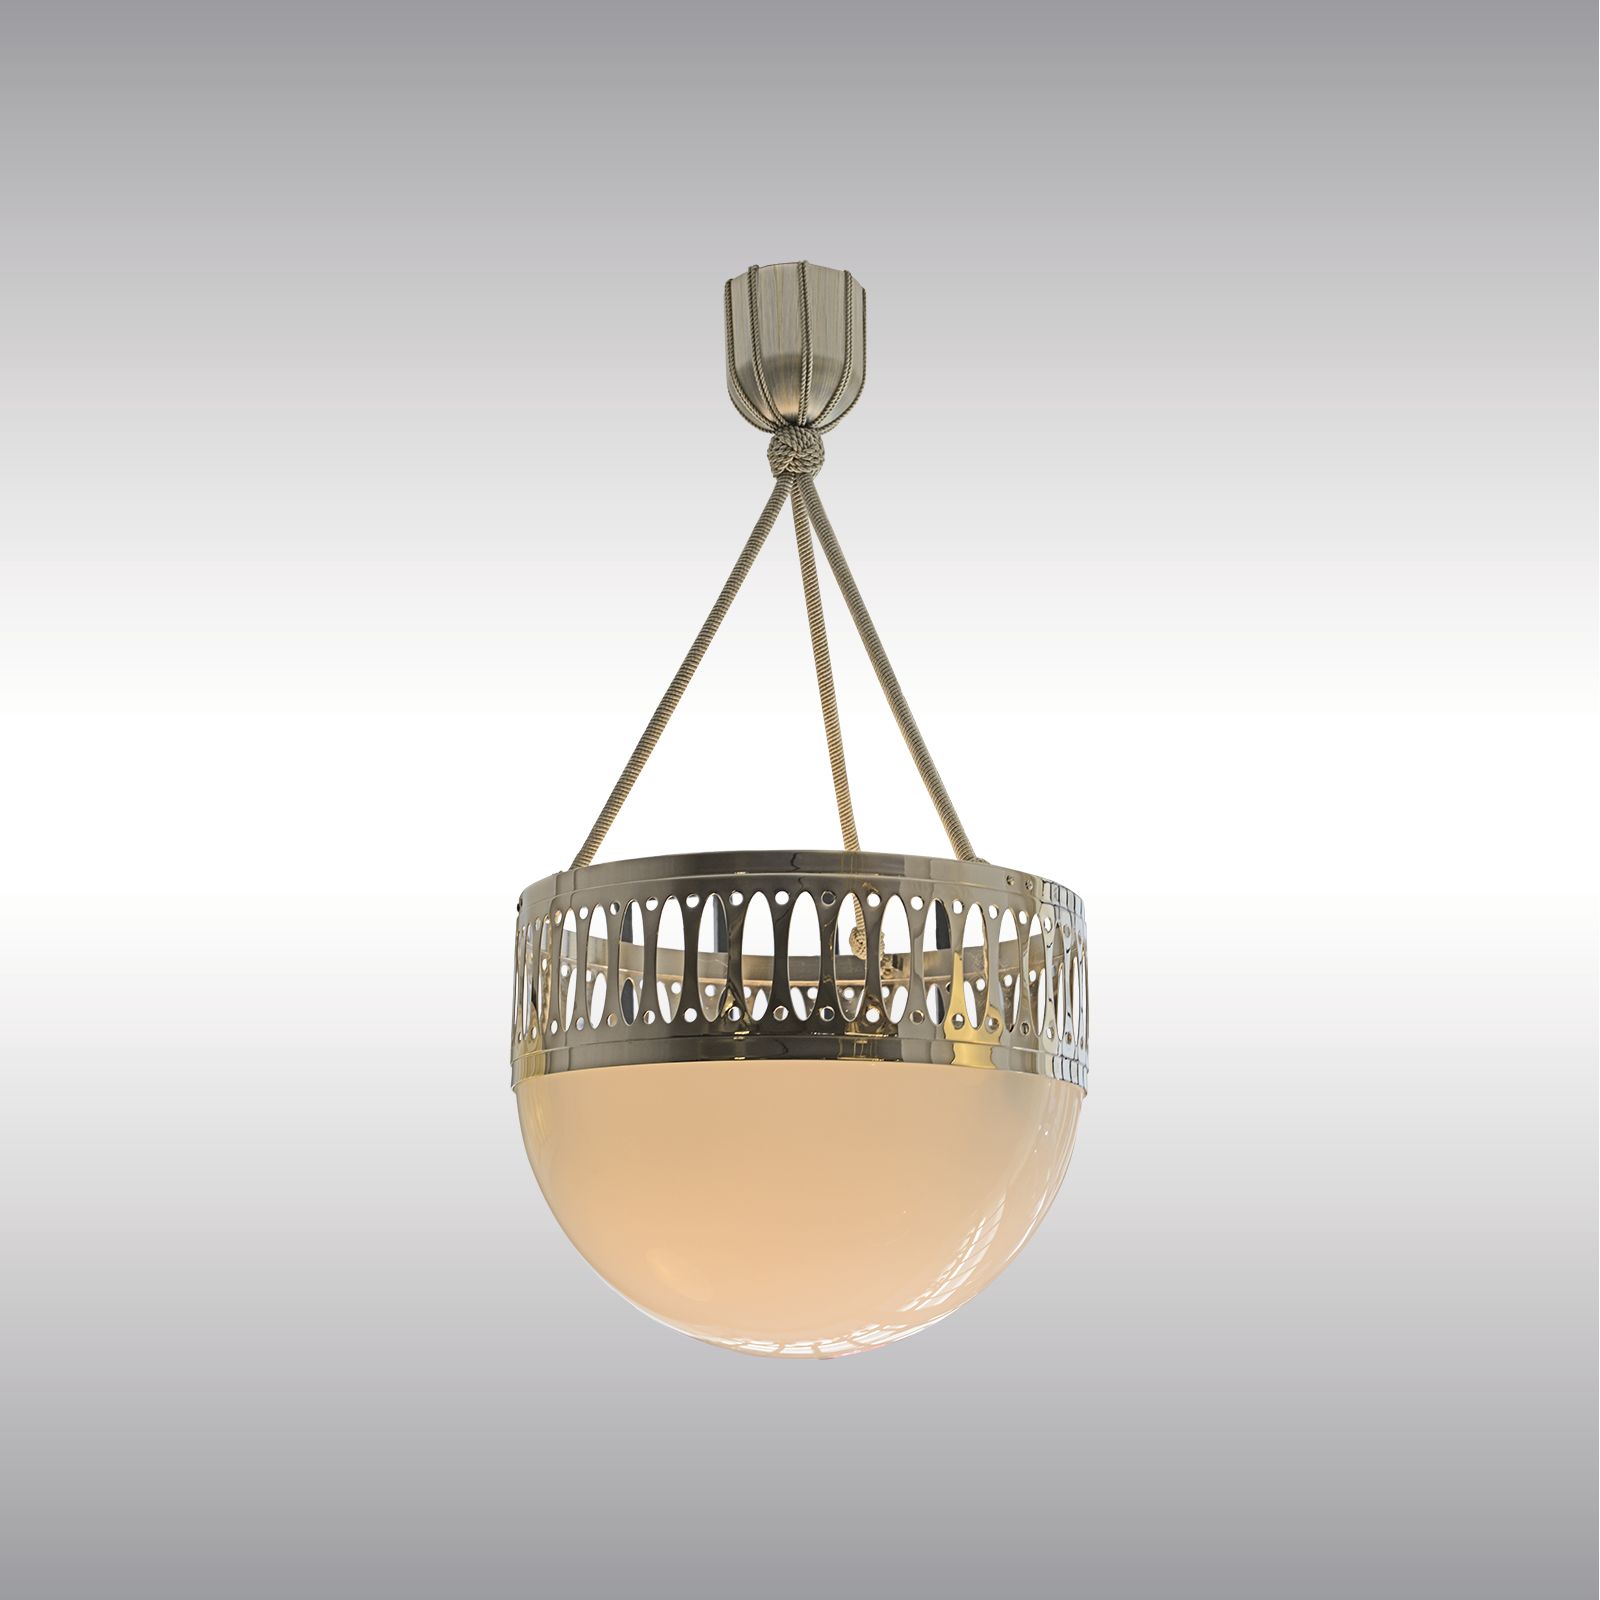 WOKA LAMPS VIENNA - OrderNr.: 9924|WW7/35PO - Design: Wiener Werkstaette